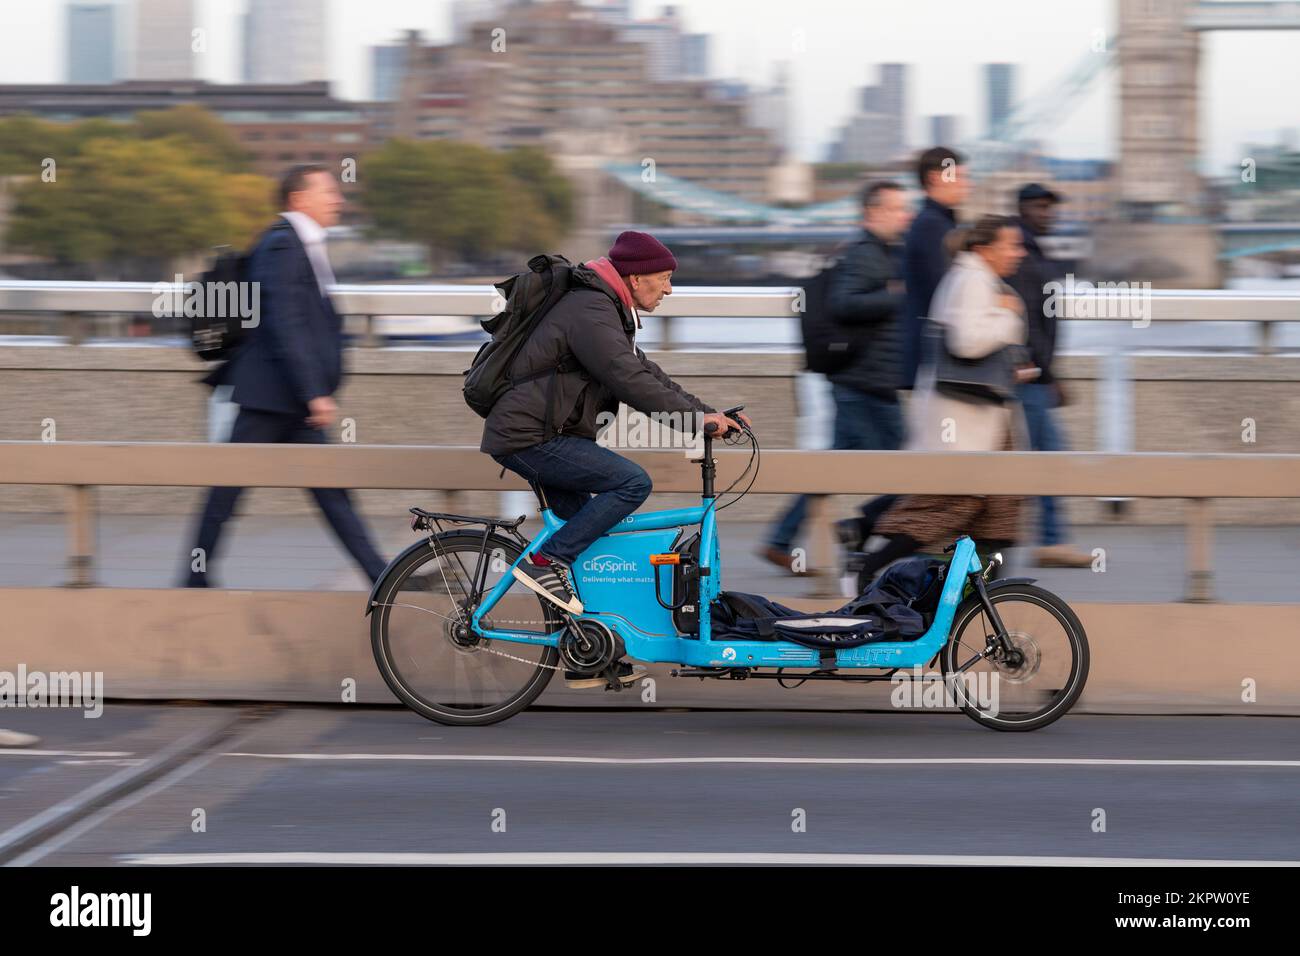 Un coursier Citysprint à vélo qui traverse un vélo de transport électronique Bullitt, London Bridge, Londres, Royaume-Uni. 18 octobre 2022 Banque D'Images